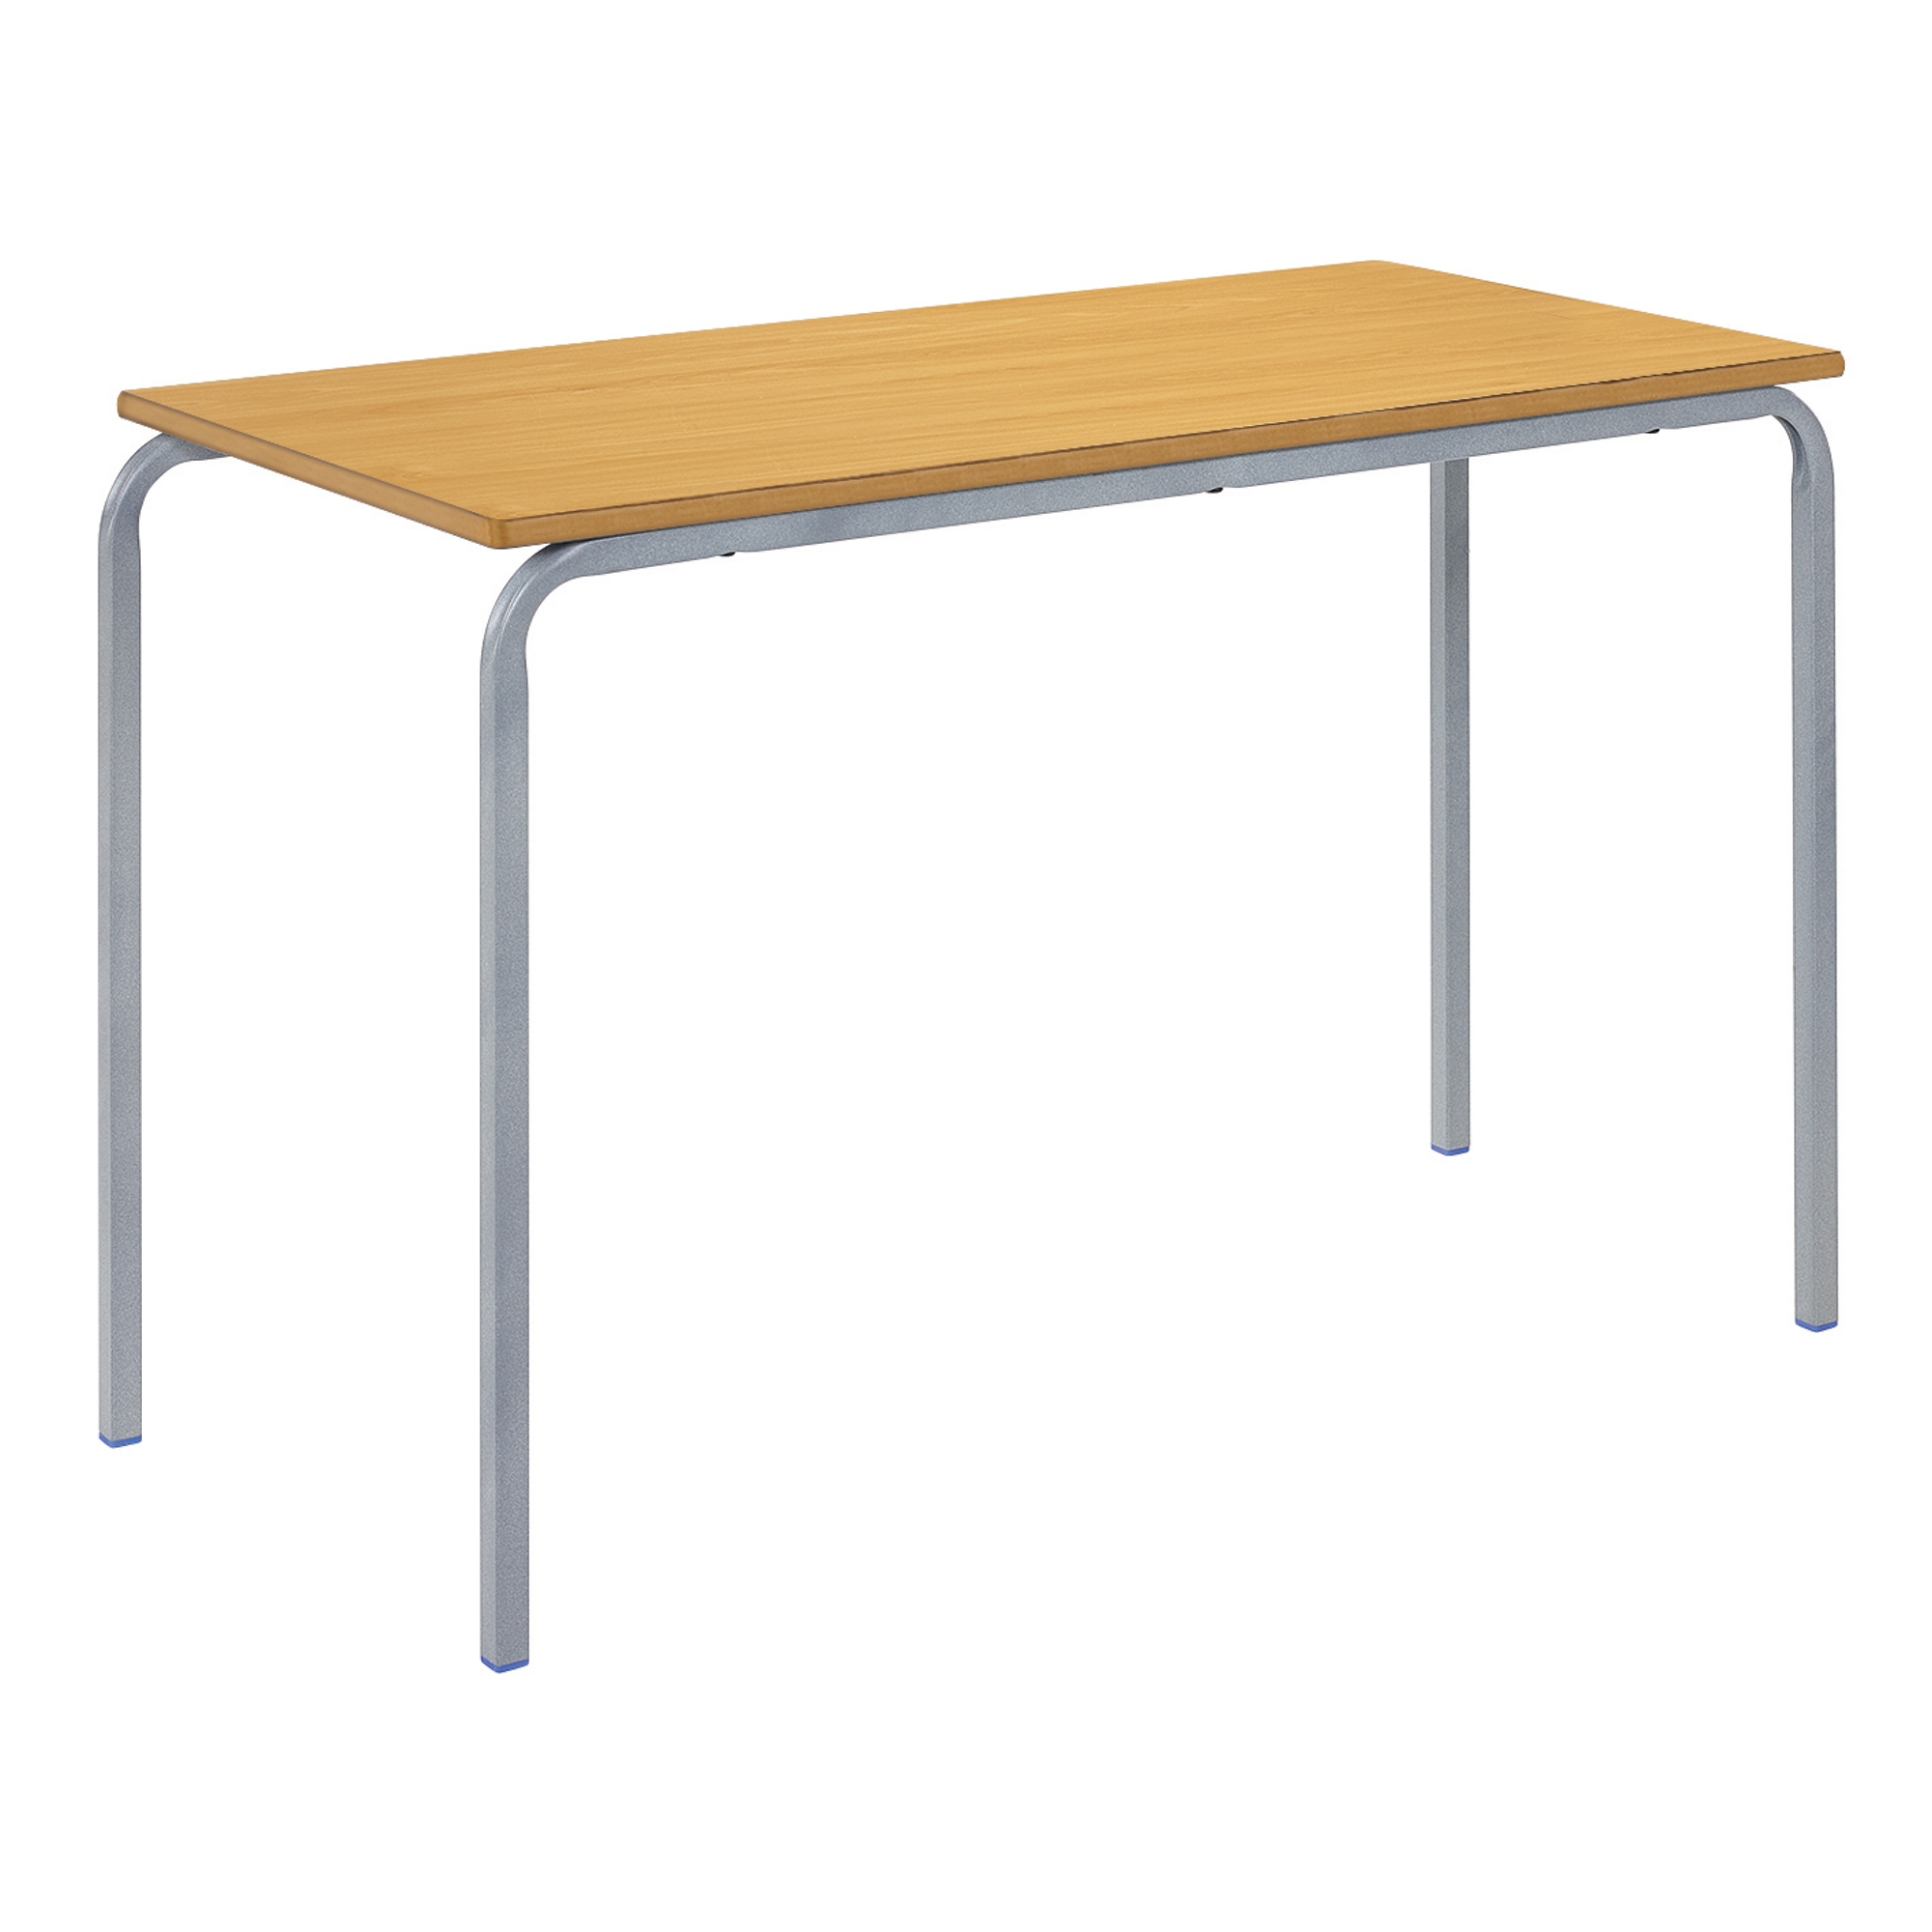 Classmates Rectangular Crushed Bent Classroom Table - 1200 x 600 x 710mm - Beech